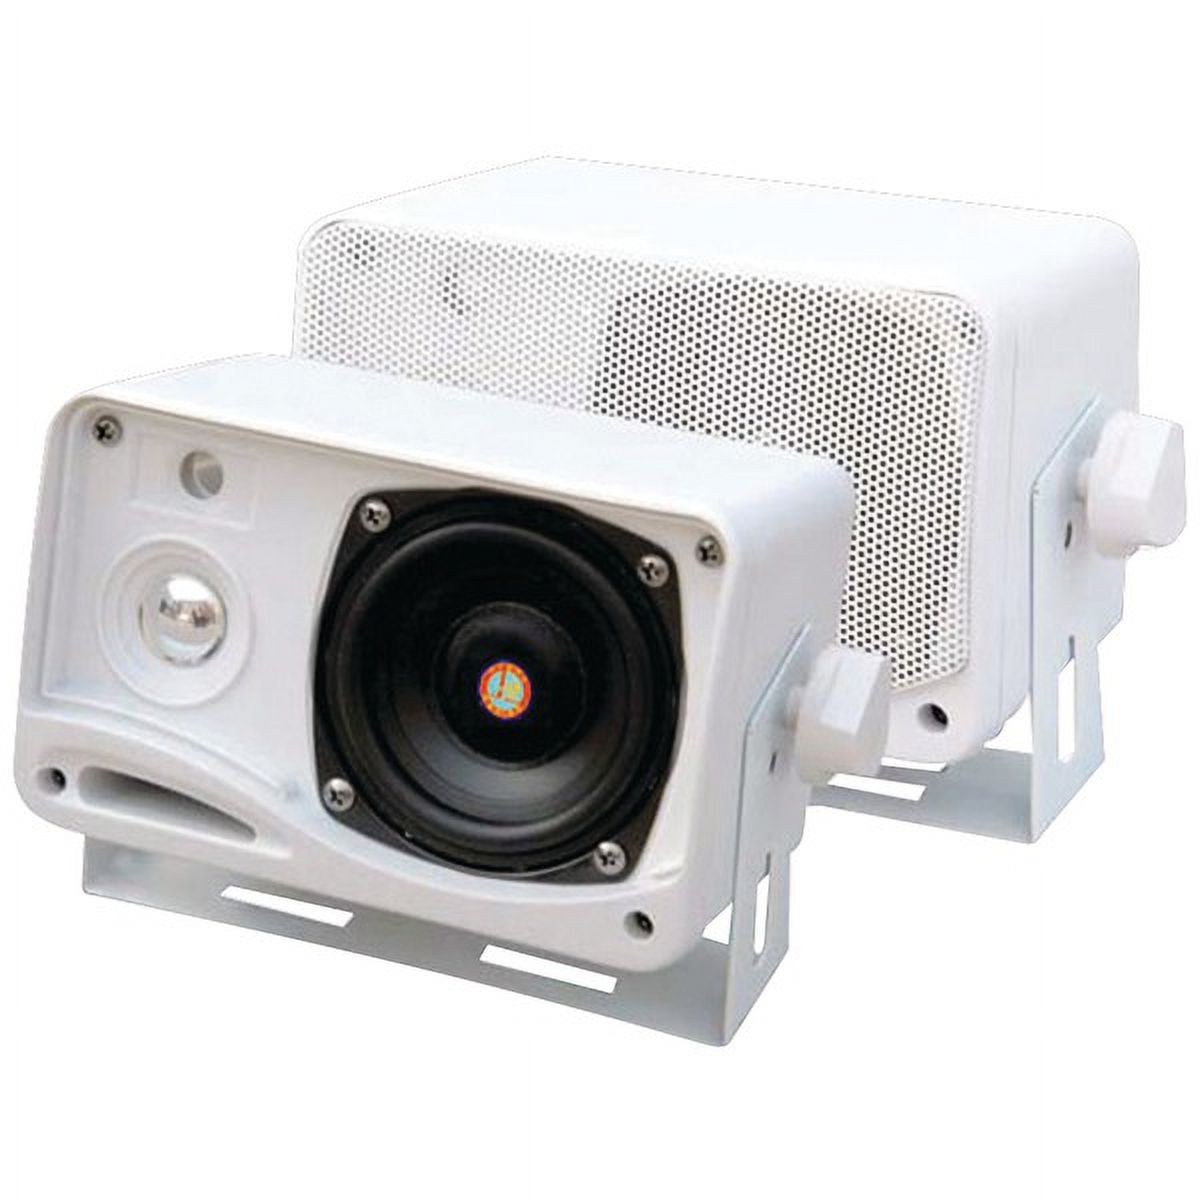 Hydra Series 3.5 200-watt 3-way Weatherproof Mini-box Speaker System (white) - image 1 of 1